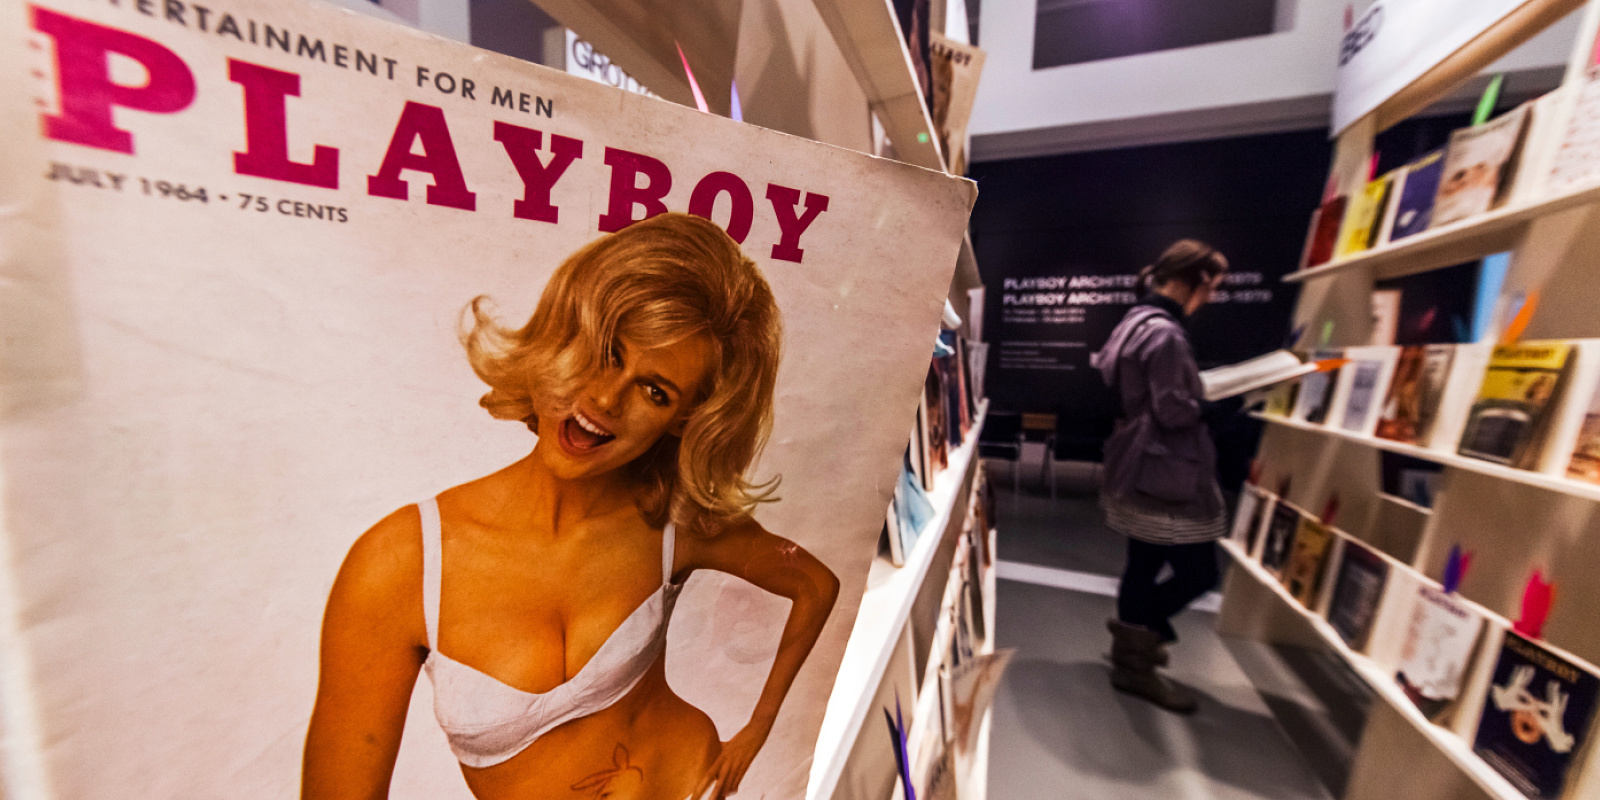 Esposizione Playboy Architektur, Museo Tedesco delrchitettura di Francoforte